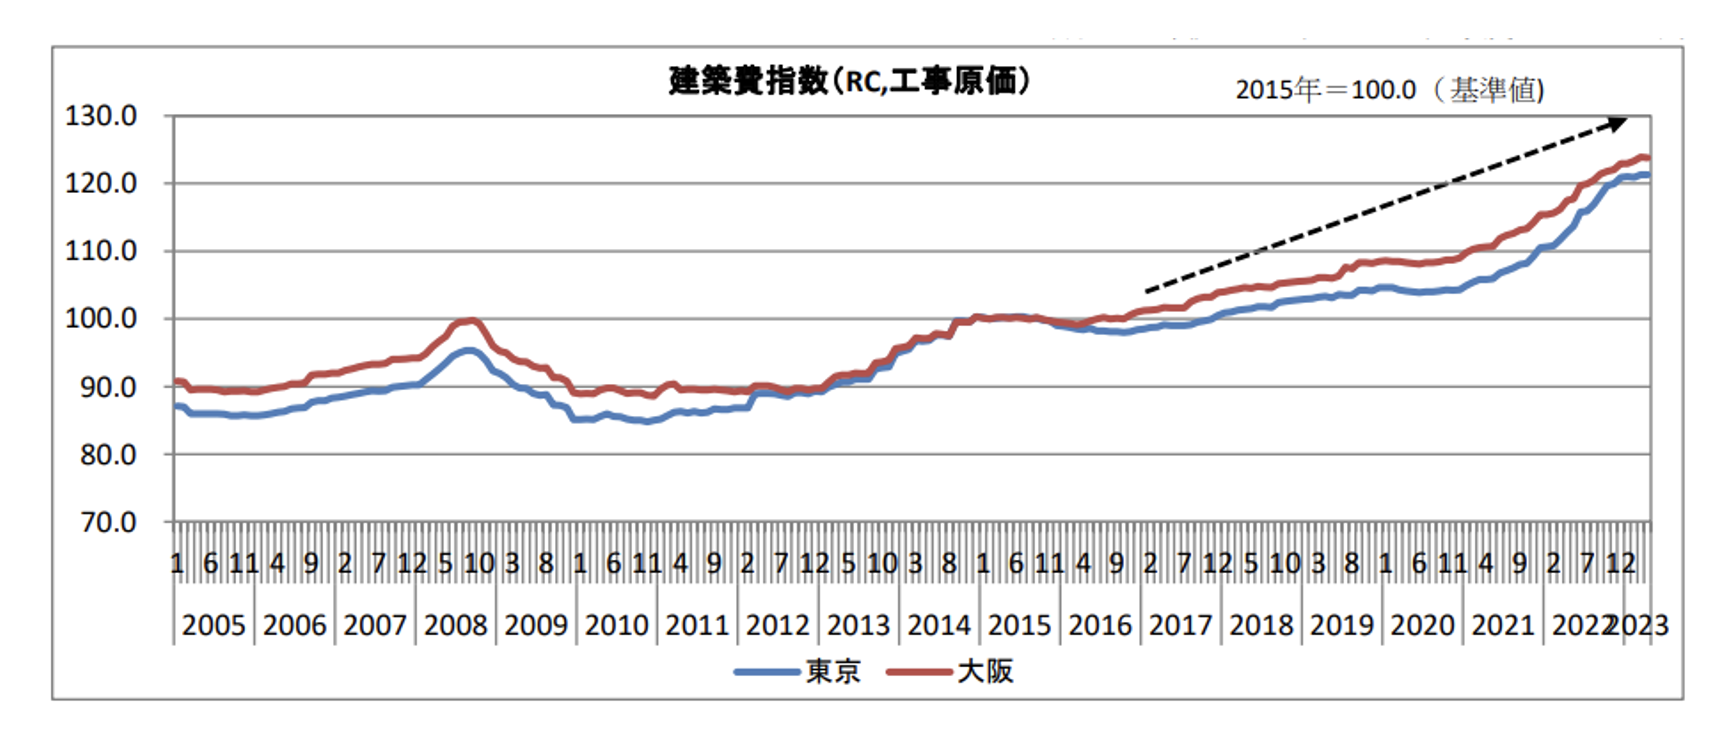 出典：（一社）建設物価調査会「建築費指数、建設物価指数月報」(※基準値が2015年)